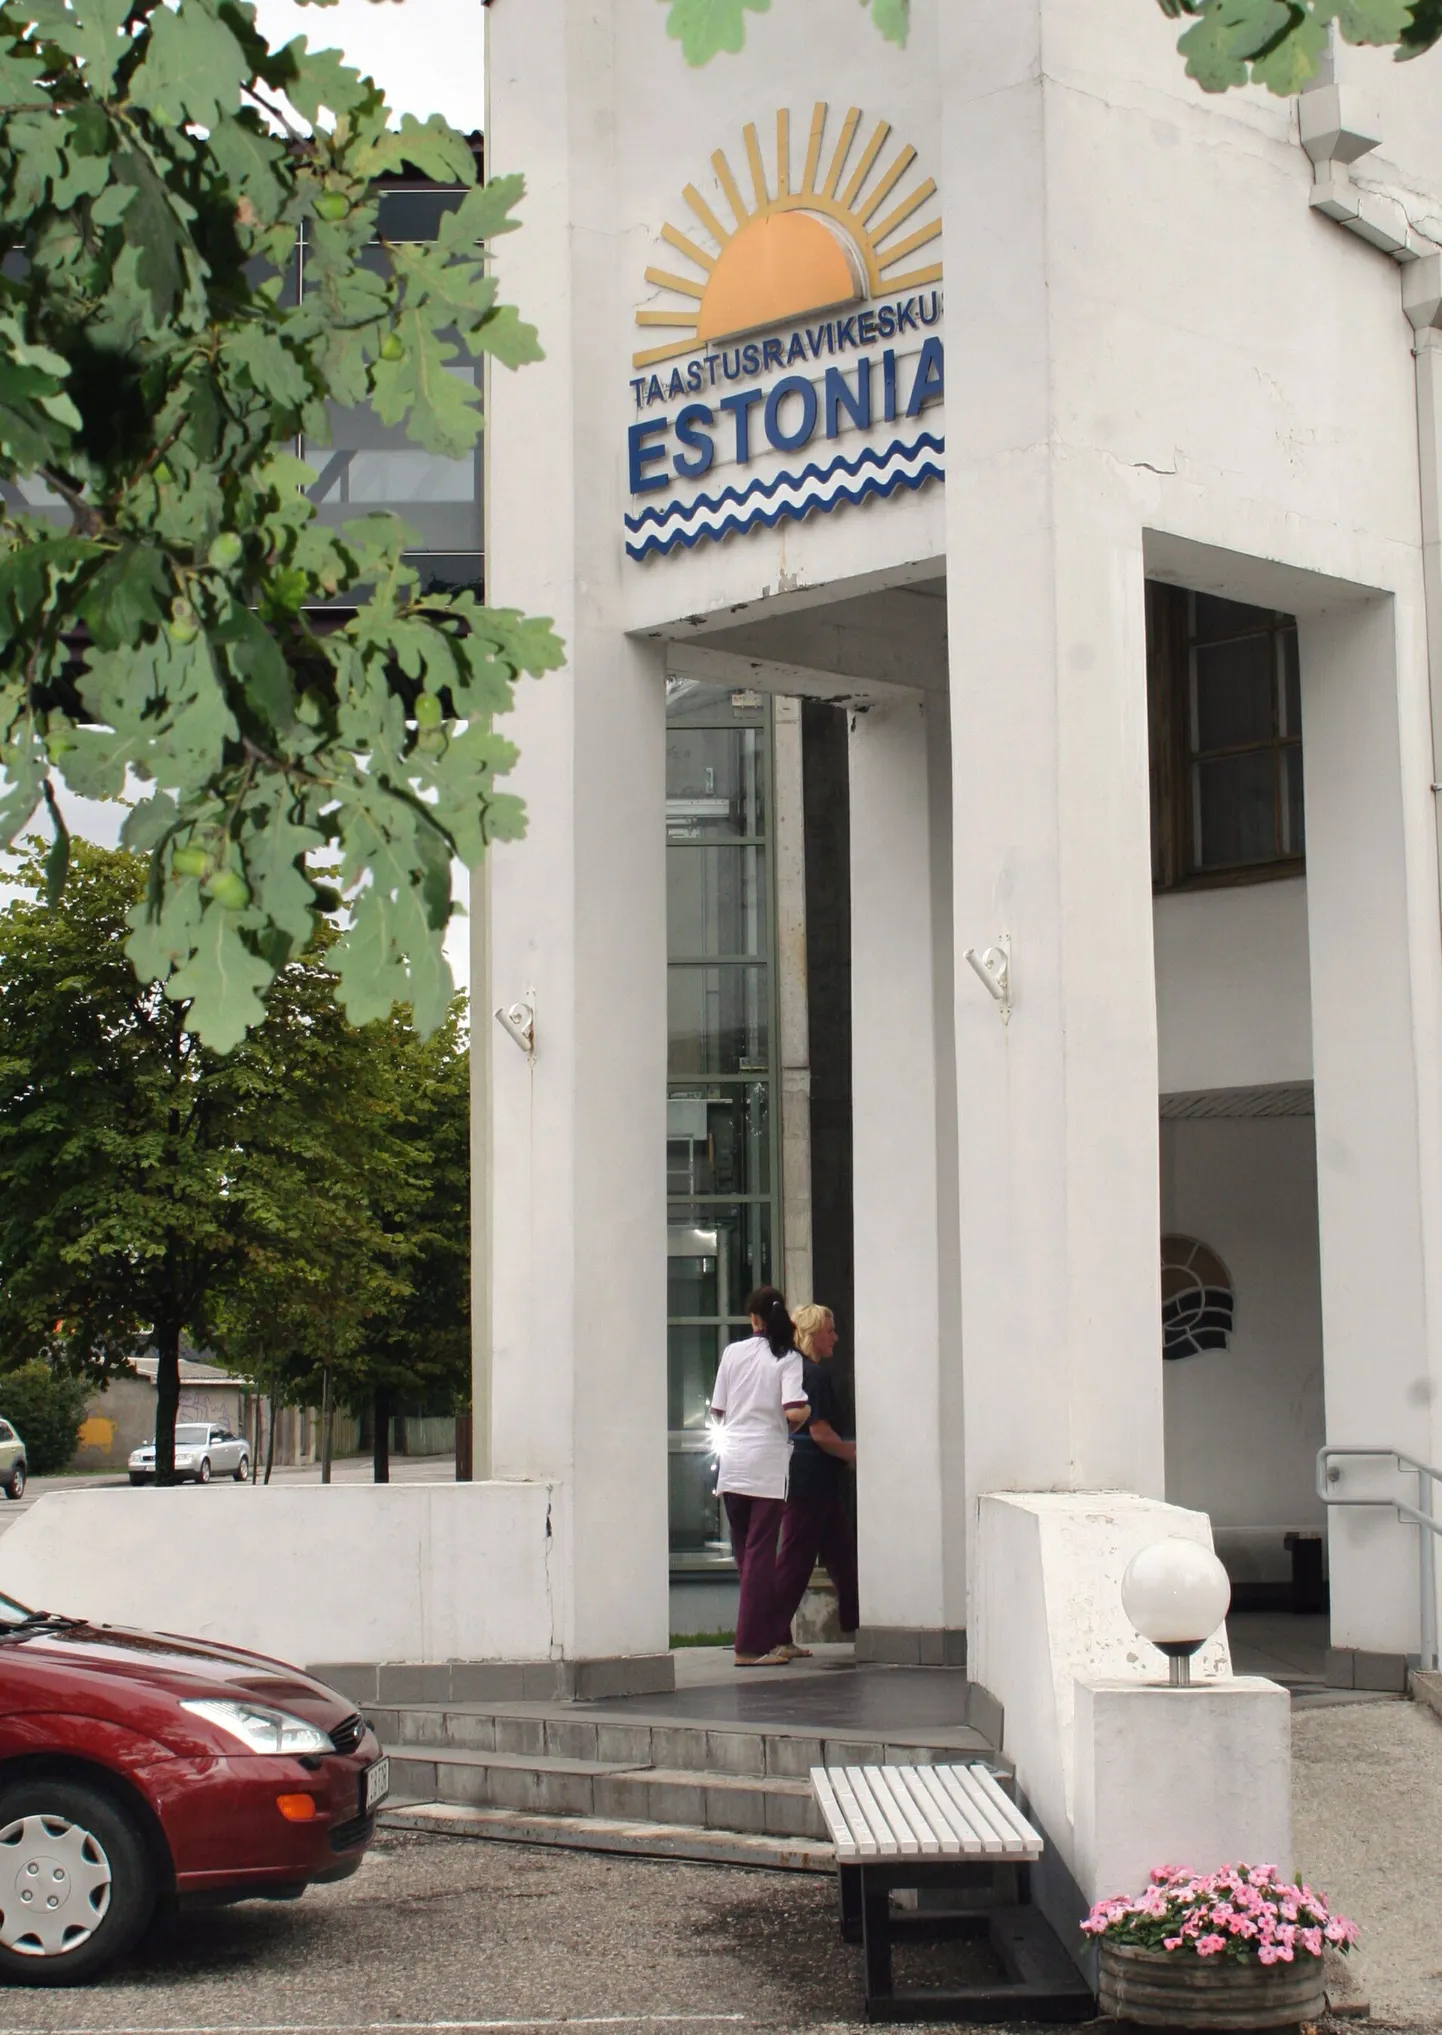 Taastusravikeskus Estonia